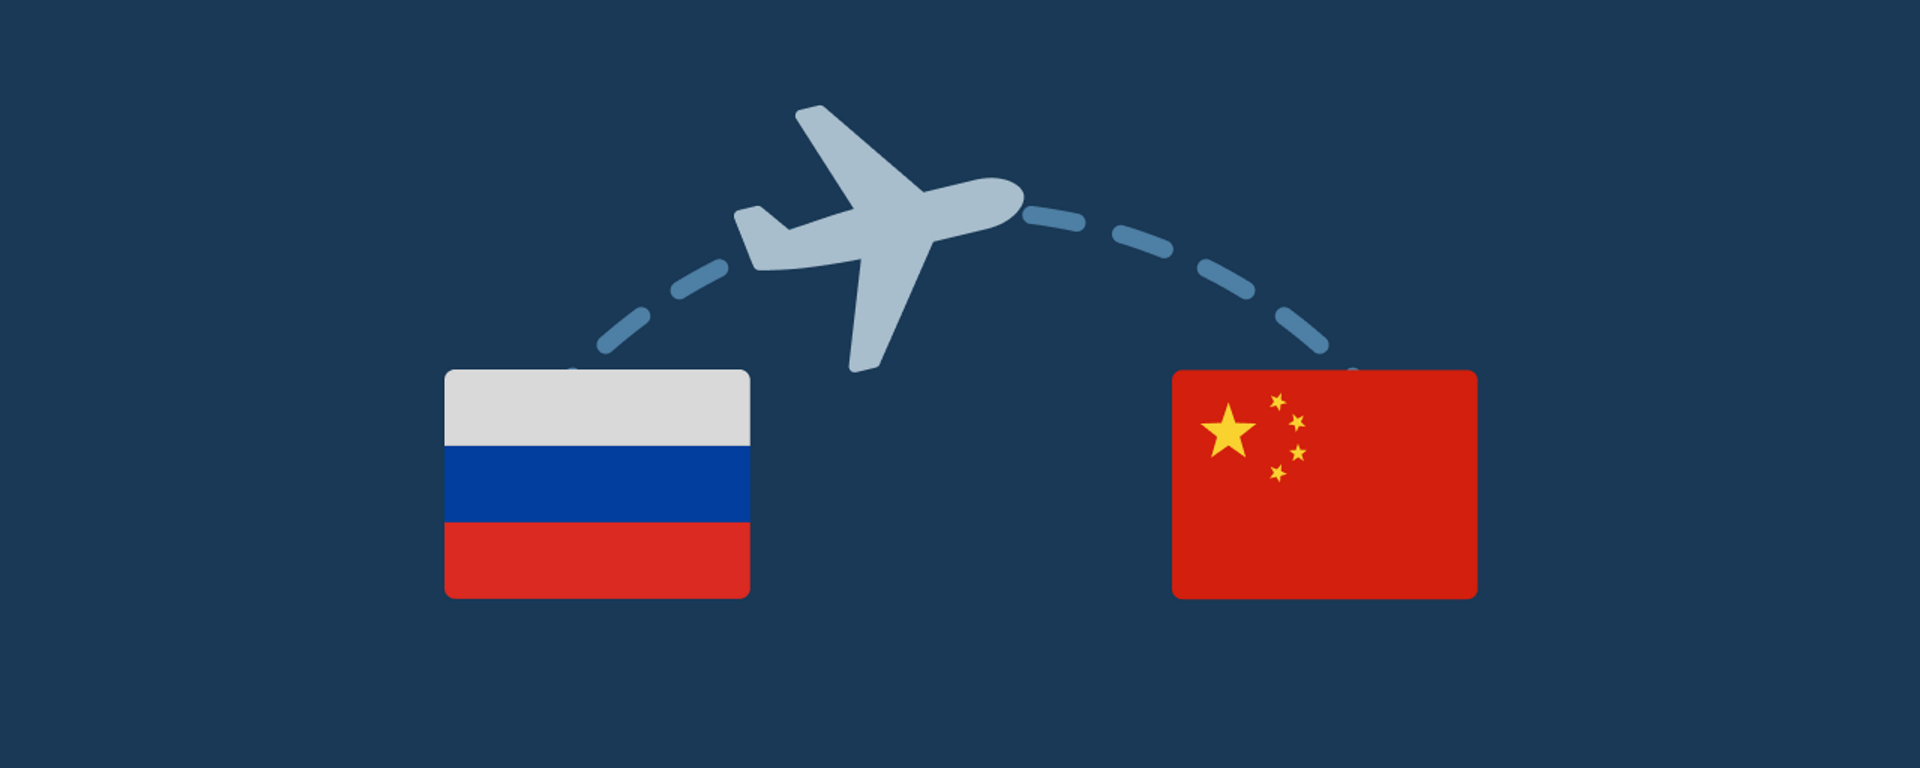 俄优梯航空将派10趟航班从中国运回医疗物资 - 2020年5月12日, 俄罗斯卫星通讯社